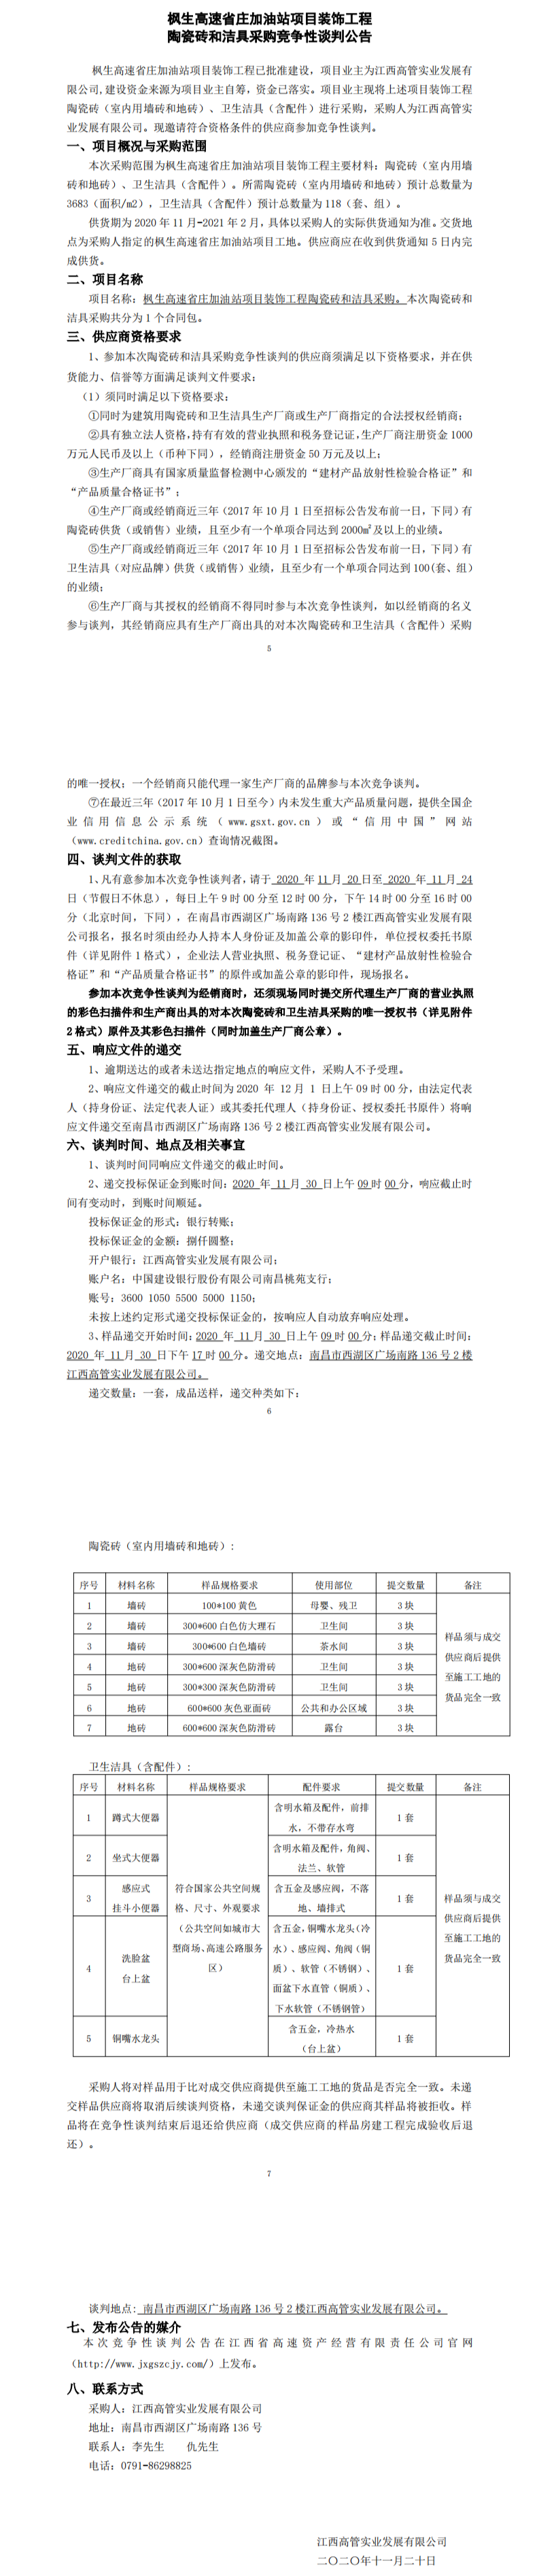 枫生高速省庄加油站项目装饰工程陶瓷砖和洁具采购竞争性谈判公告